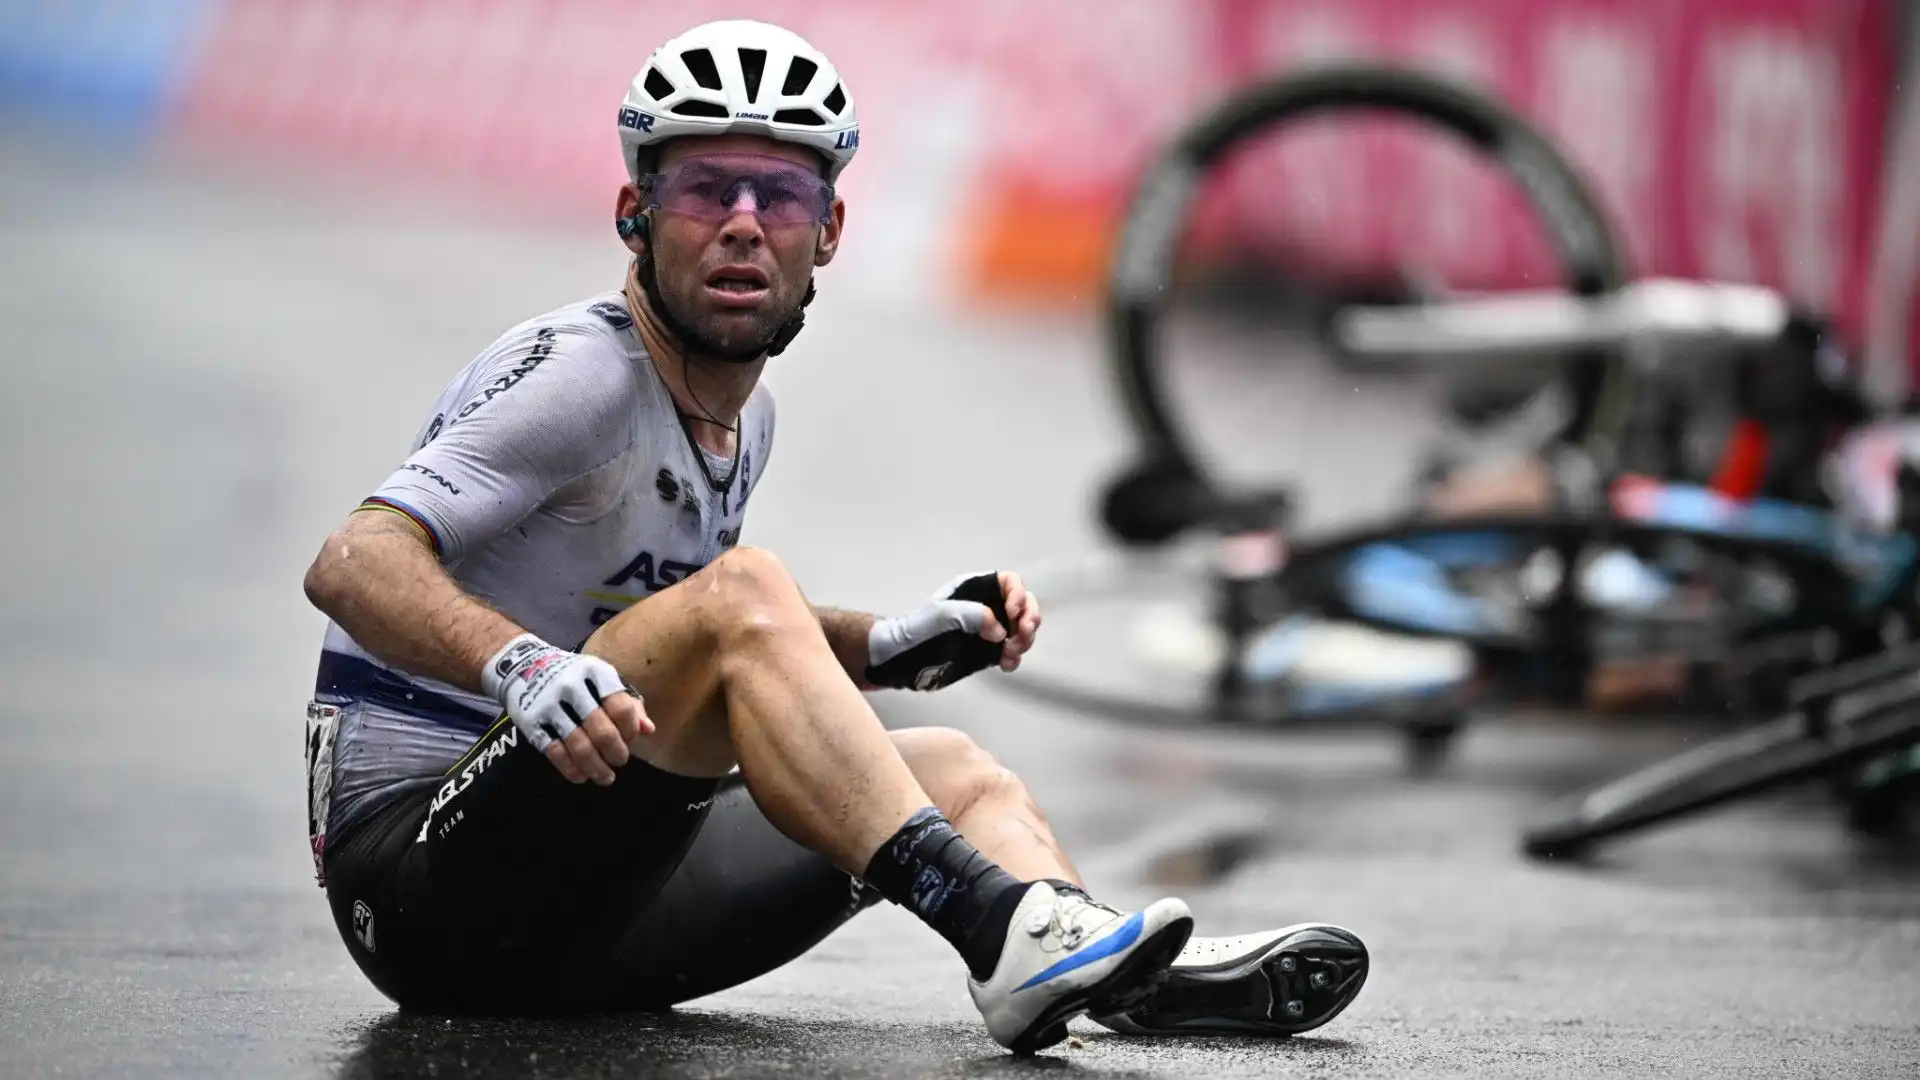 Maxi caduta durante l'ultimo tratto della quinta tappa del Giro d'Italia